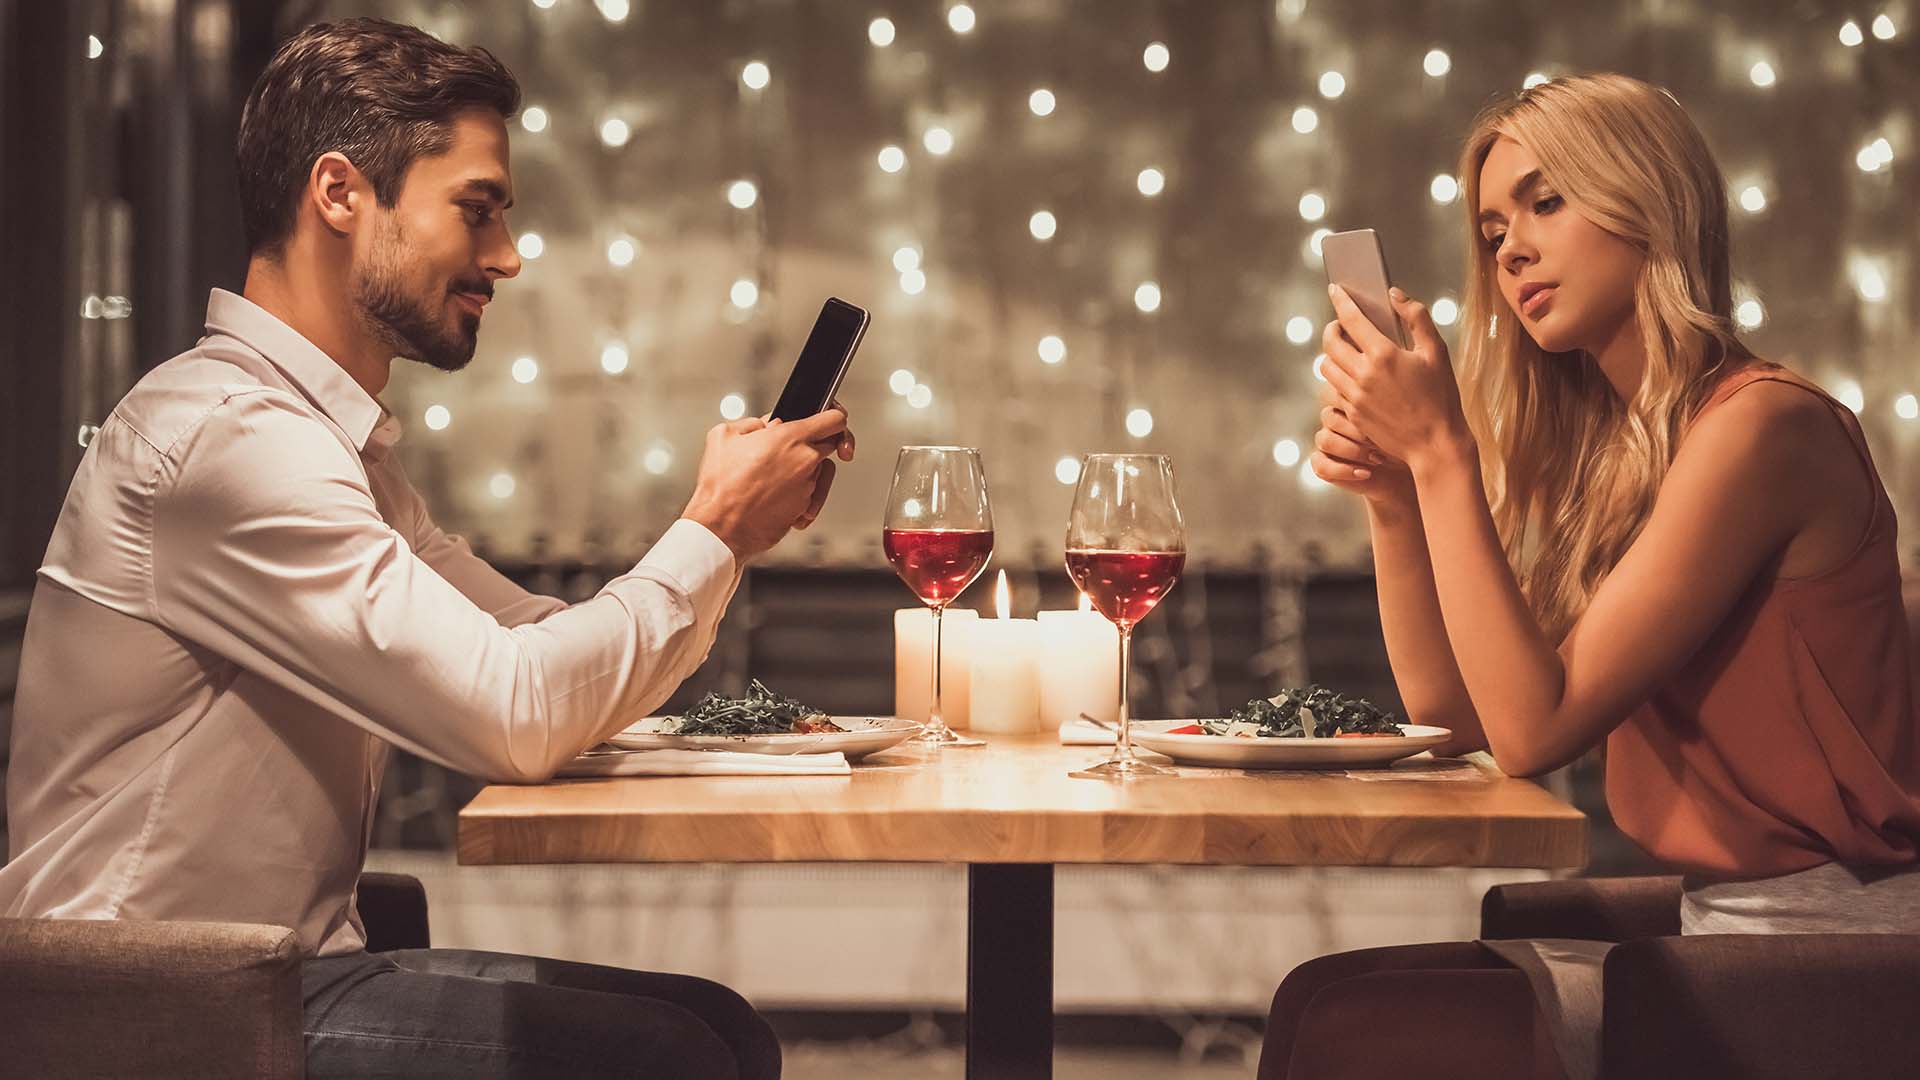 Darmowe portale randkowe bez rejestracji. Sprawdź ranking 2023